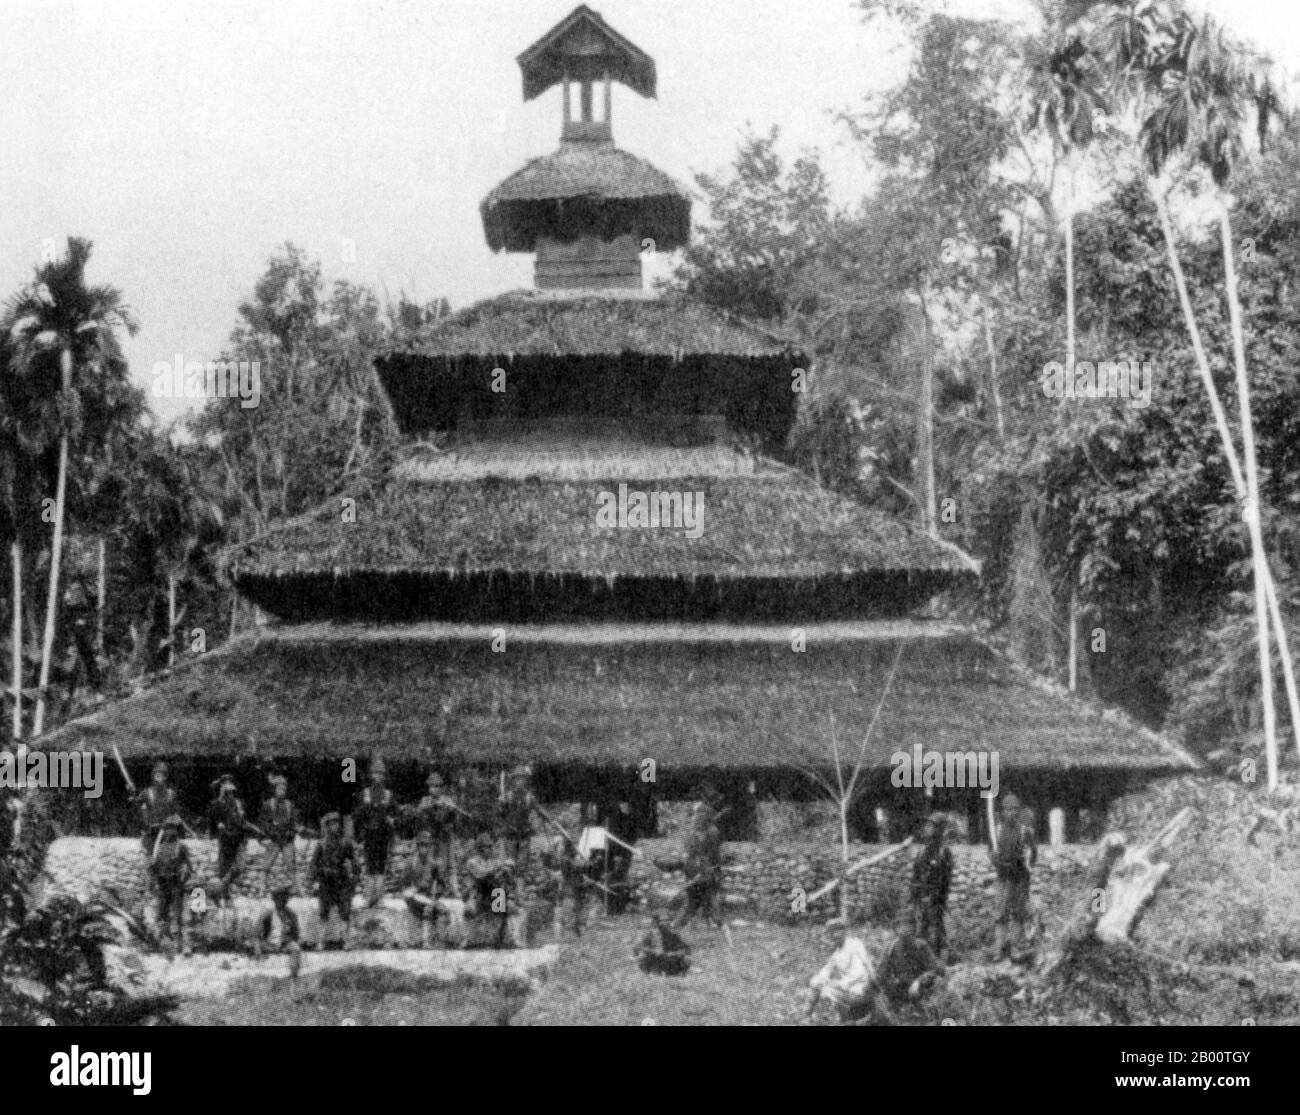 Indonesien: Ein Foto aus dem späten 19. Jahrhundert einer traditionellen Acehnesischen Moschee im Norden Sumatras. Aceh liegt an der Nordspitze der Insel Sumatra. Es wird angenommen, dass es in Aceh gewesen ist, wo der Islam zum ersten Mal in Südostasien gegründet wurde. Anfang des 17. Jahrhunderts war das Sultanat von Aceh der wohlhabendste, mächtigste und kultivierteste Staat in der Region der Malakka-Straße. Die Provinz Aceh hat heute den höchsten Anteil an Muslimen in Indonesien und verfügt über regionale Scharia-Gesetze. Stockfoto